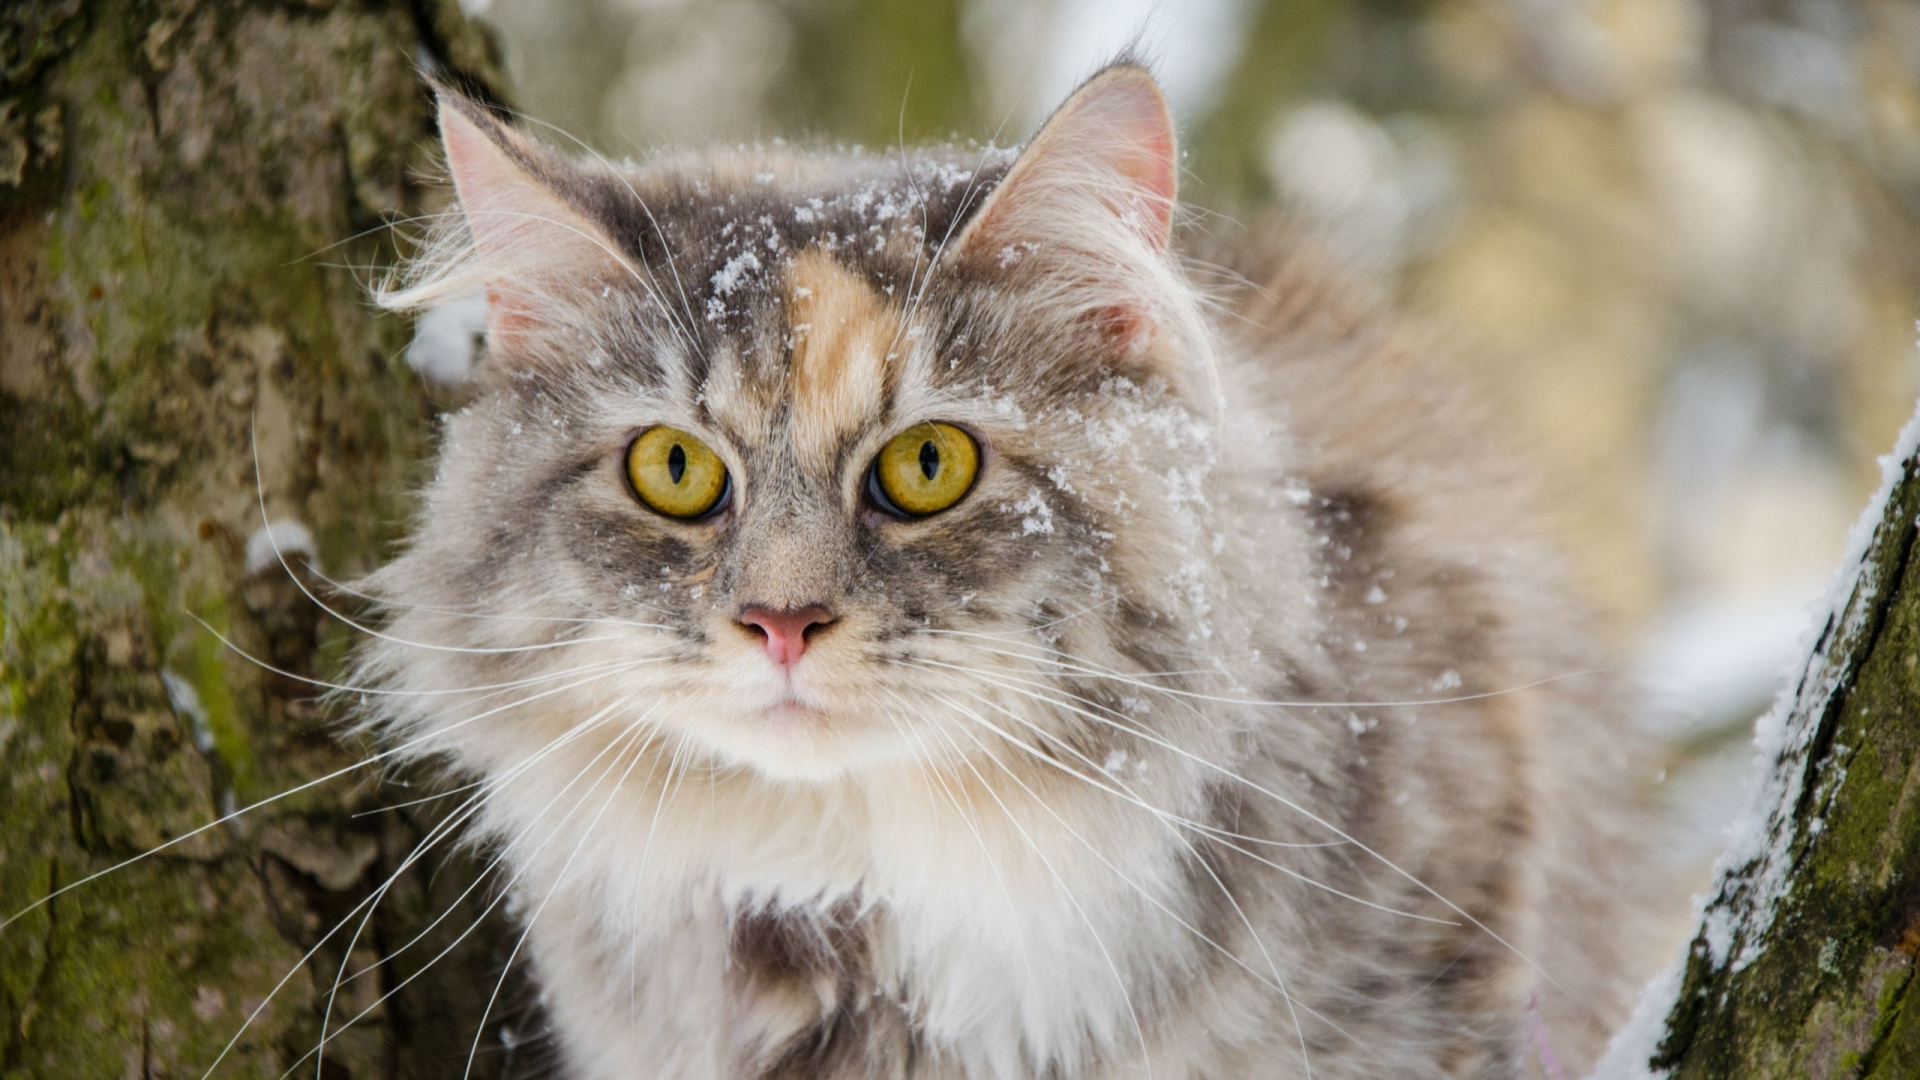 胡须, 西伯利亚的猫, 缅因, 挪威森林猫, 爱琴的猫 壁纸 1920x1080 允许